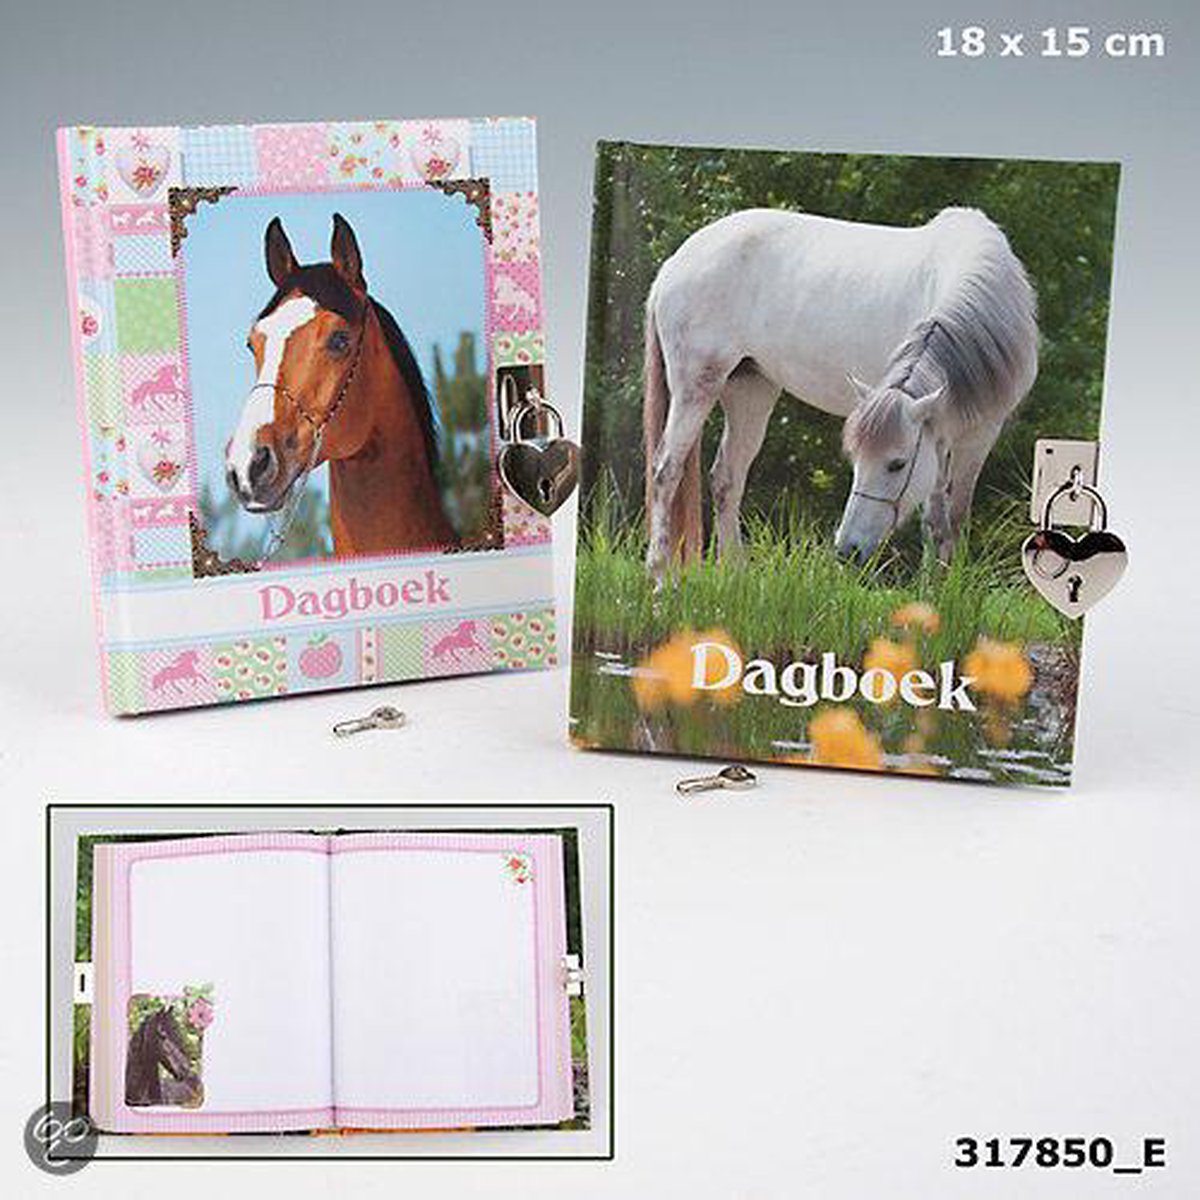 Horses dreams dagboek paars